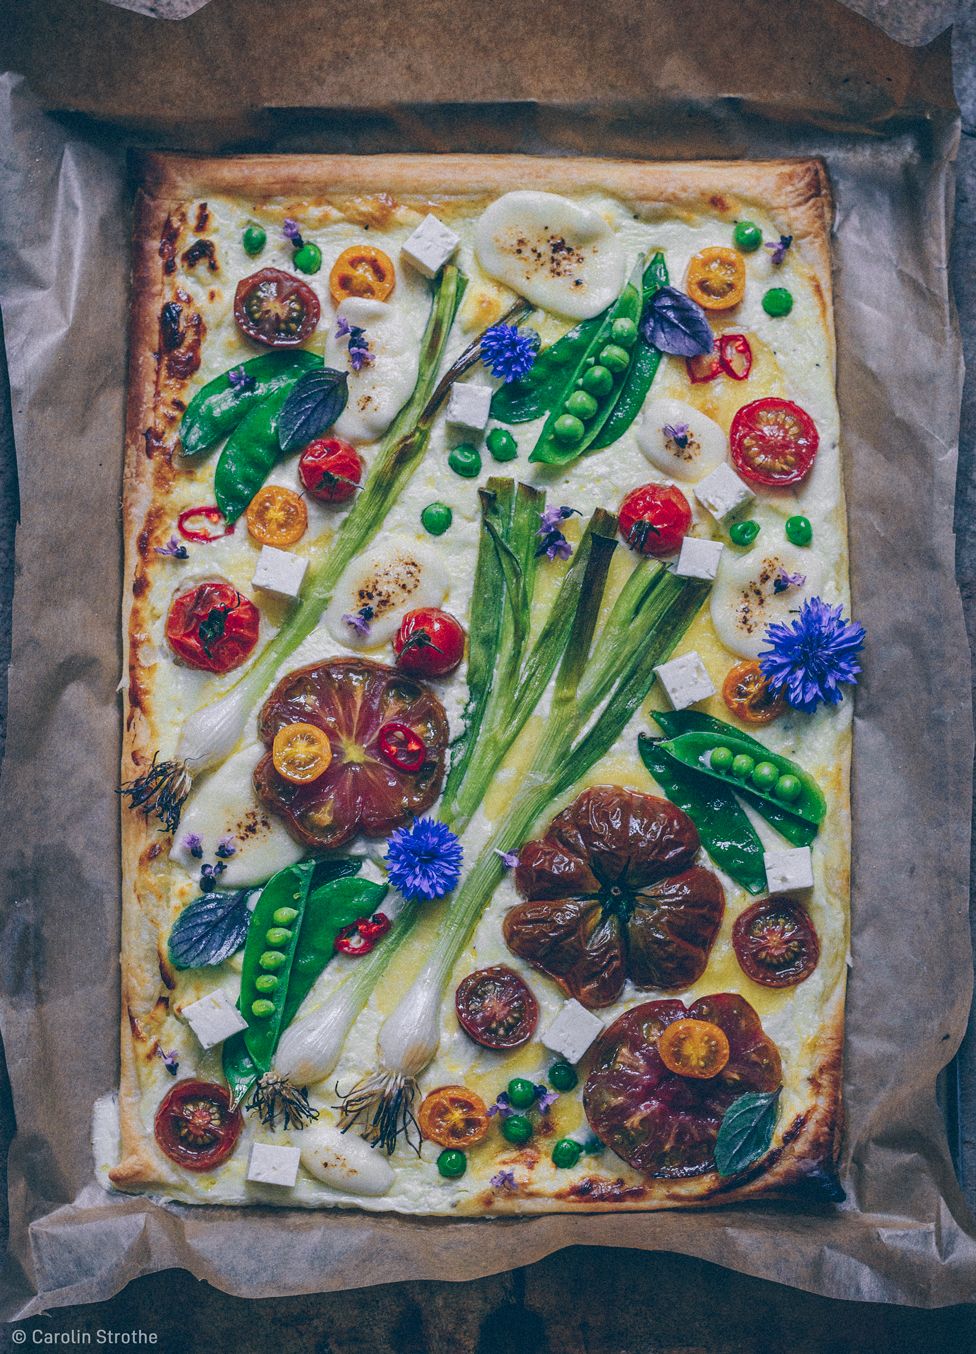 Colourful vegetable tart